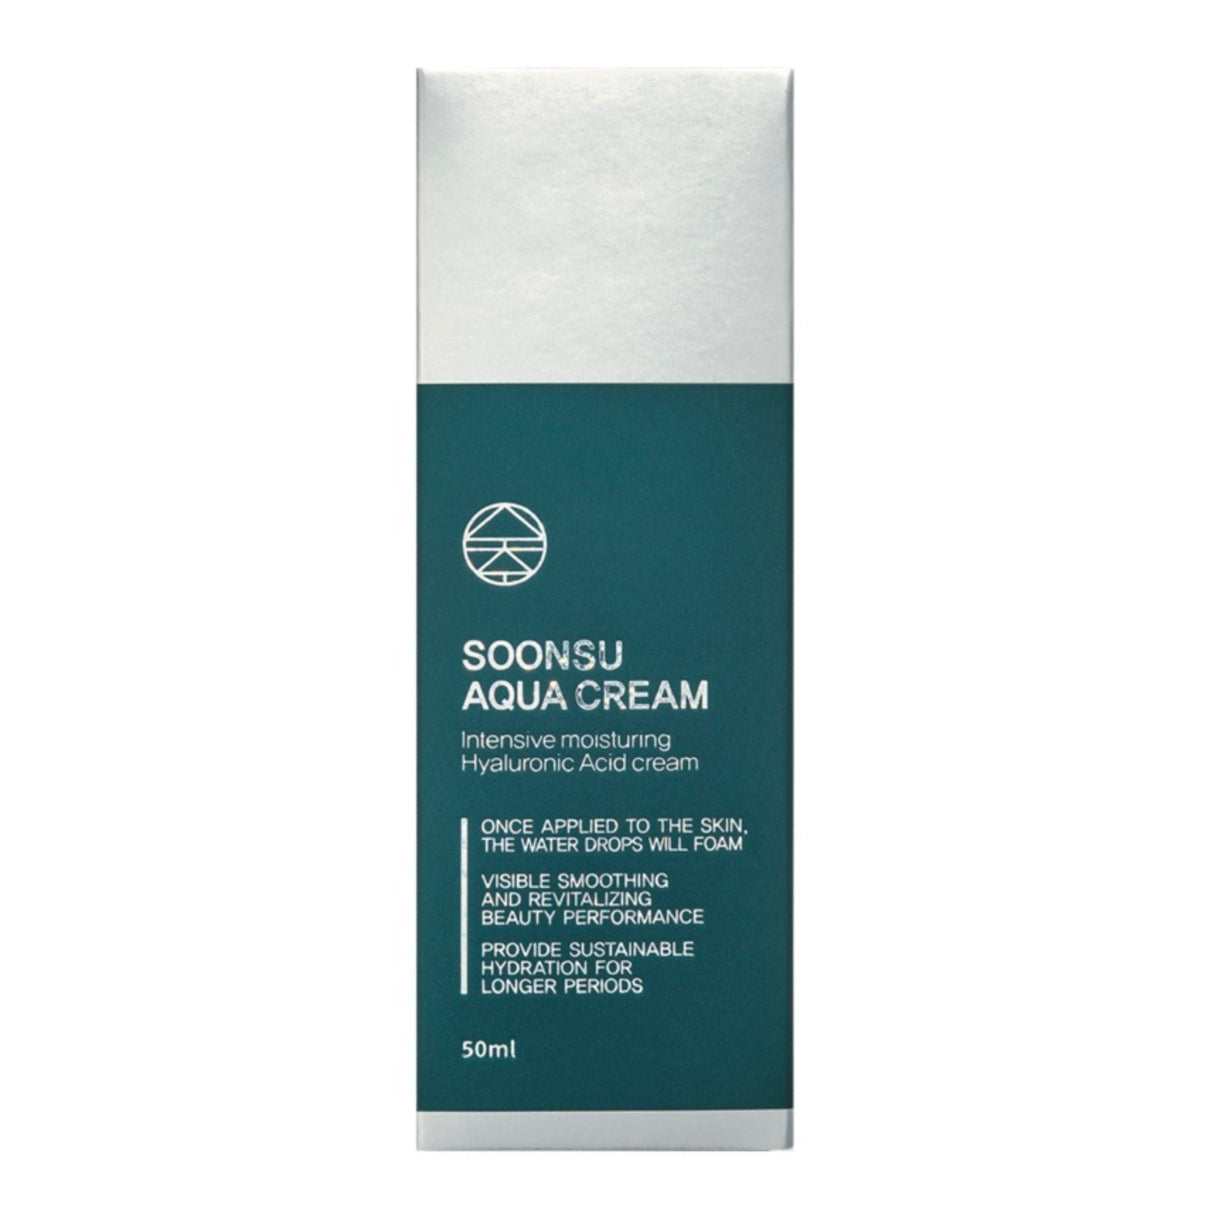 Soonsu Aqua Cream - Filler Lux™ - SKIN CARE - Soonsu